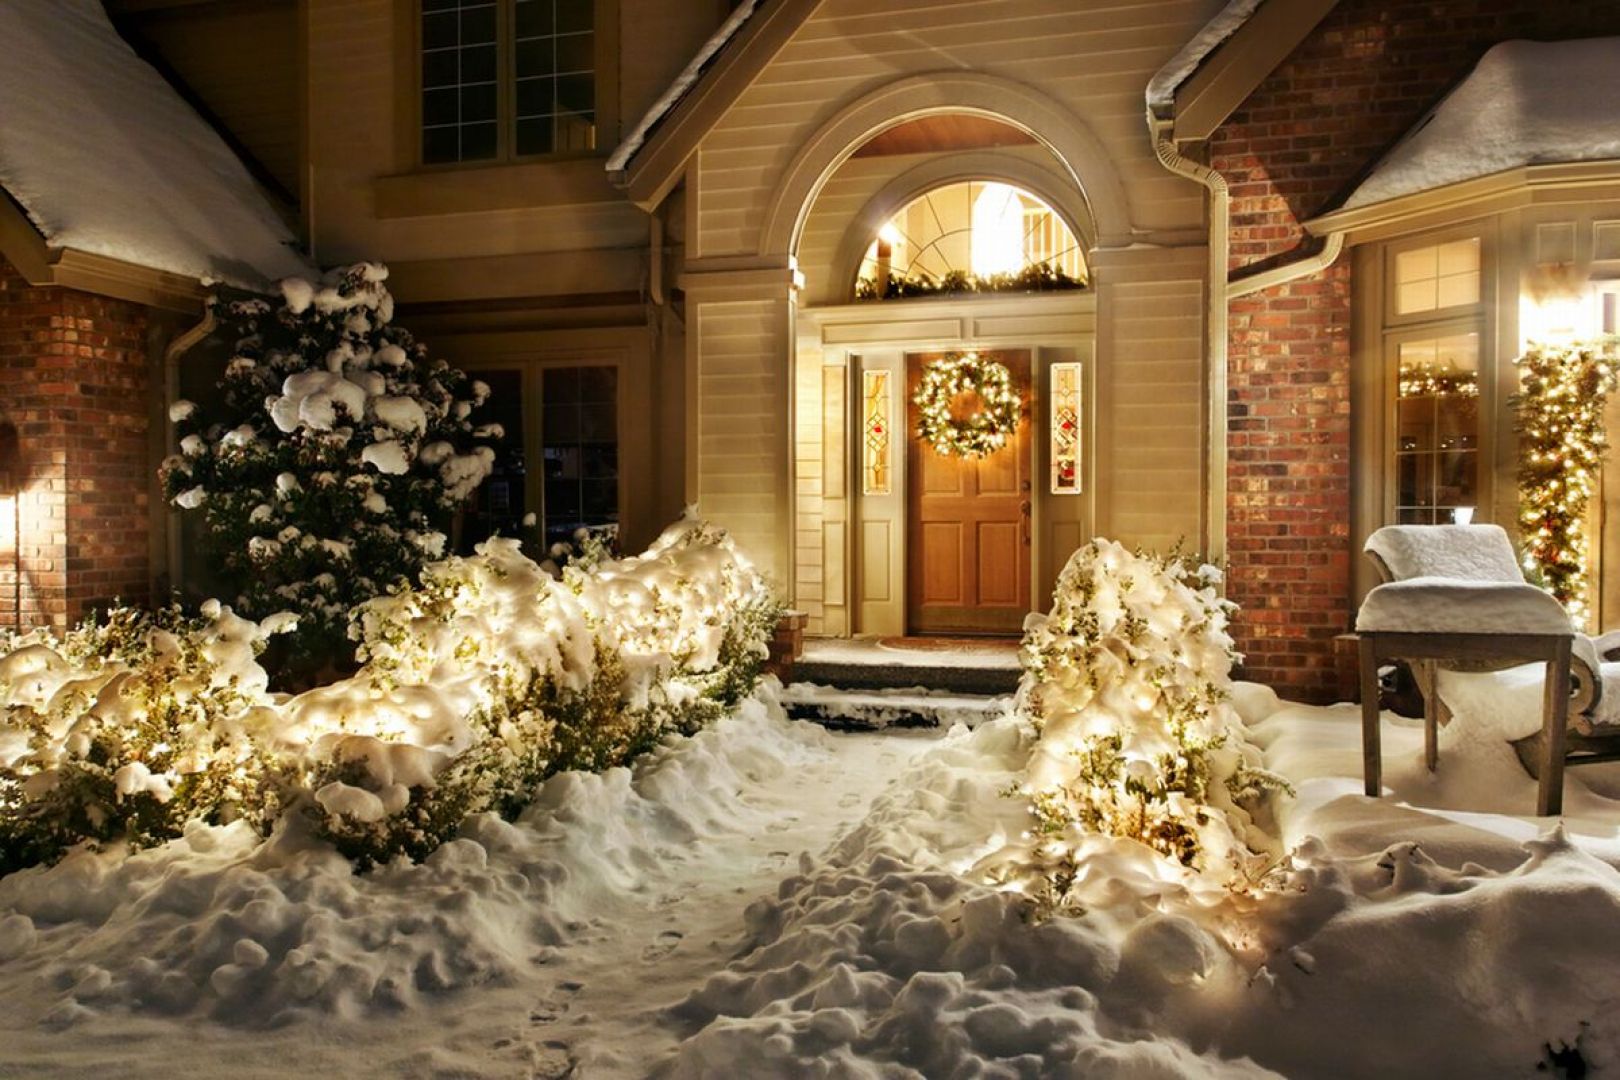 Najprostszym sposobem na udekorowanie świątecznego ogrodu są różnego rodzaju lampki. Możemy ozdobić za ich pomocą, nie tylko choinkę w domu, ale także drzewka i krzewy na zewnątrz. Fot. Shutterstock